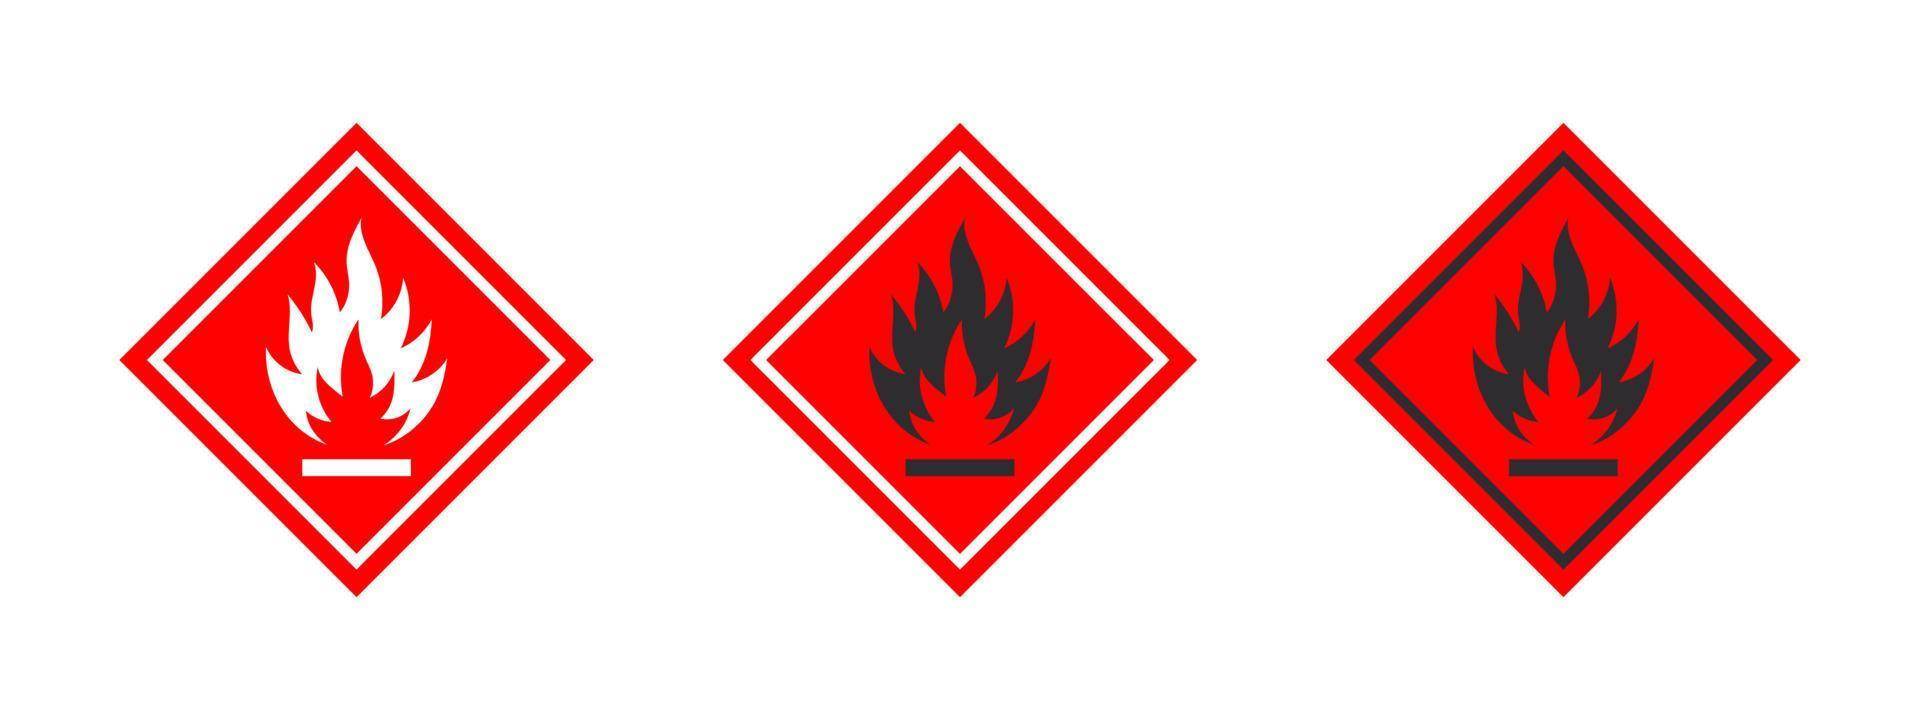 Warnzeichen für brennbare Materialien. Zeichen Gefahr brennbarer Flüssigkeiten oder Materialien. Symbole für brennbare Substanzen gesetzt. Vektorsymbole vektor